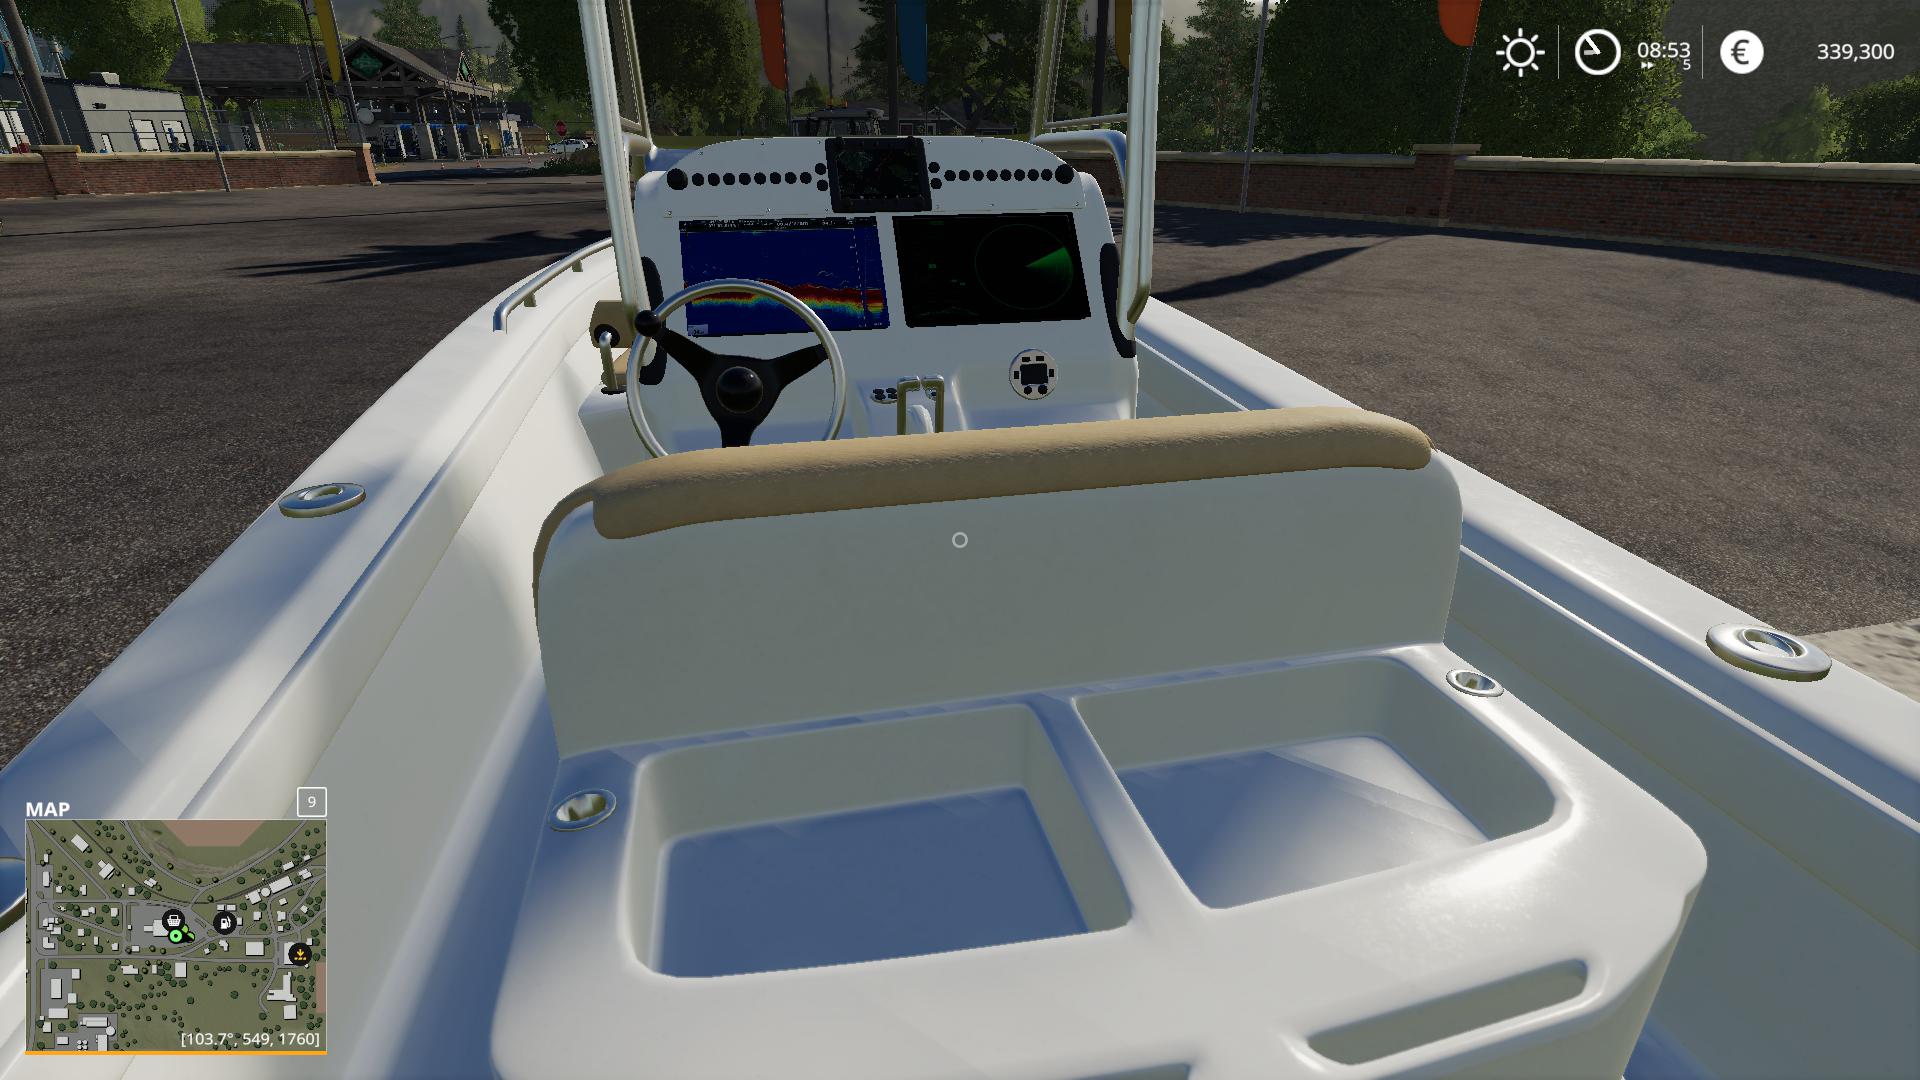 FS19 - Everglade Boat V1.0.6.9 | Farming Simulator 19 | Mods.club